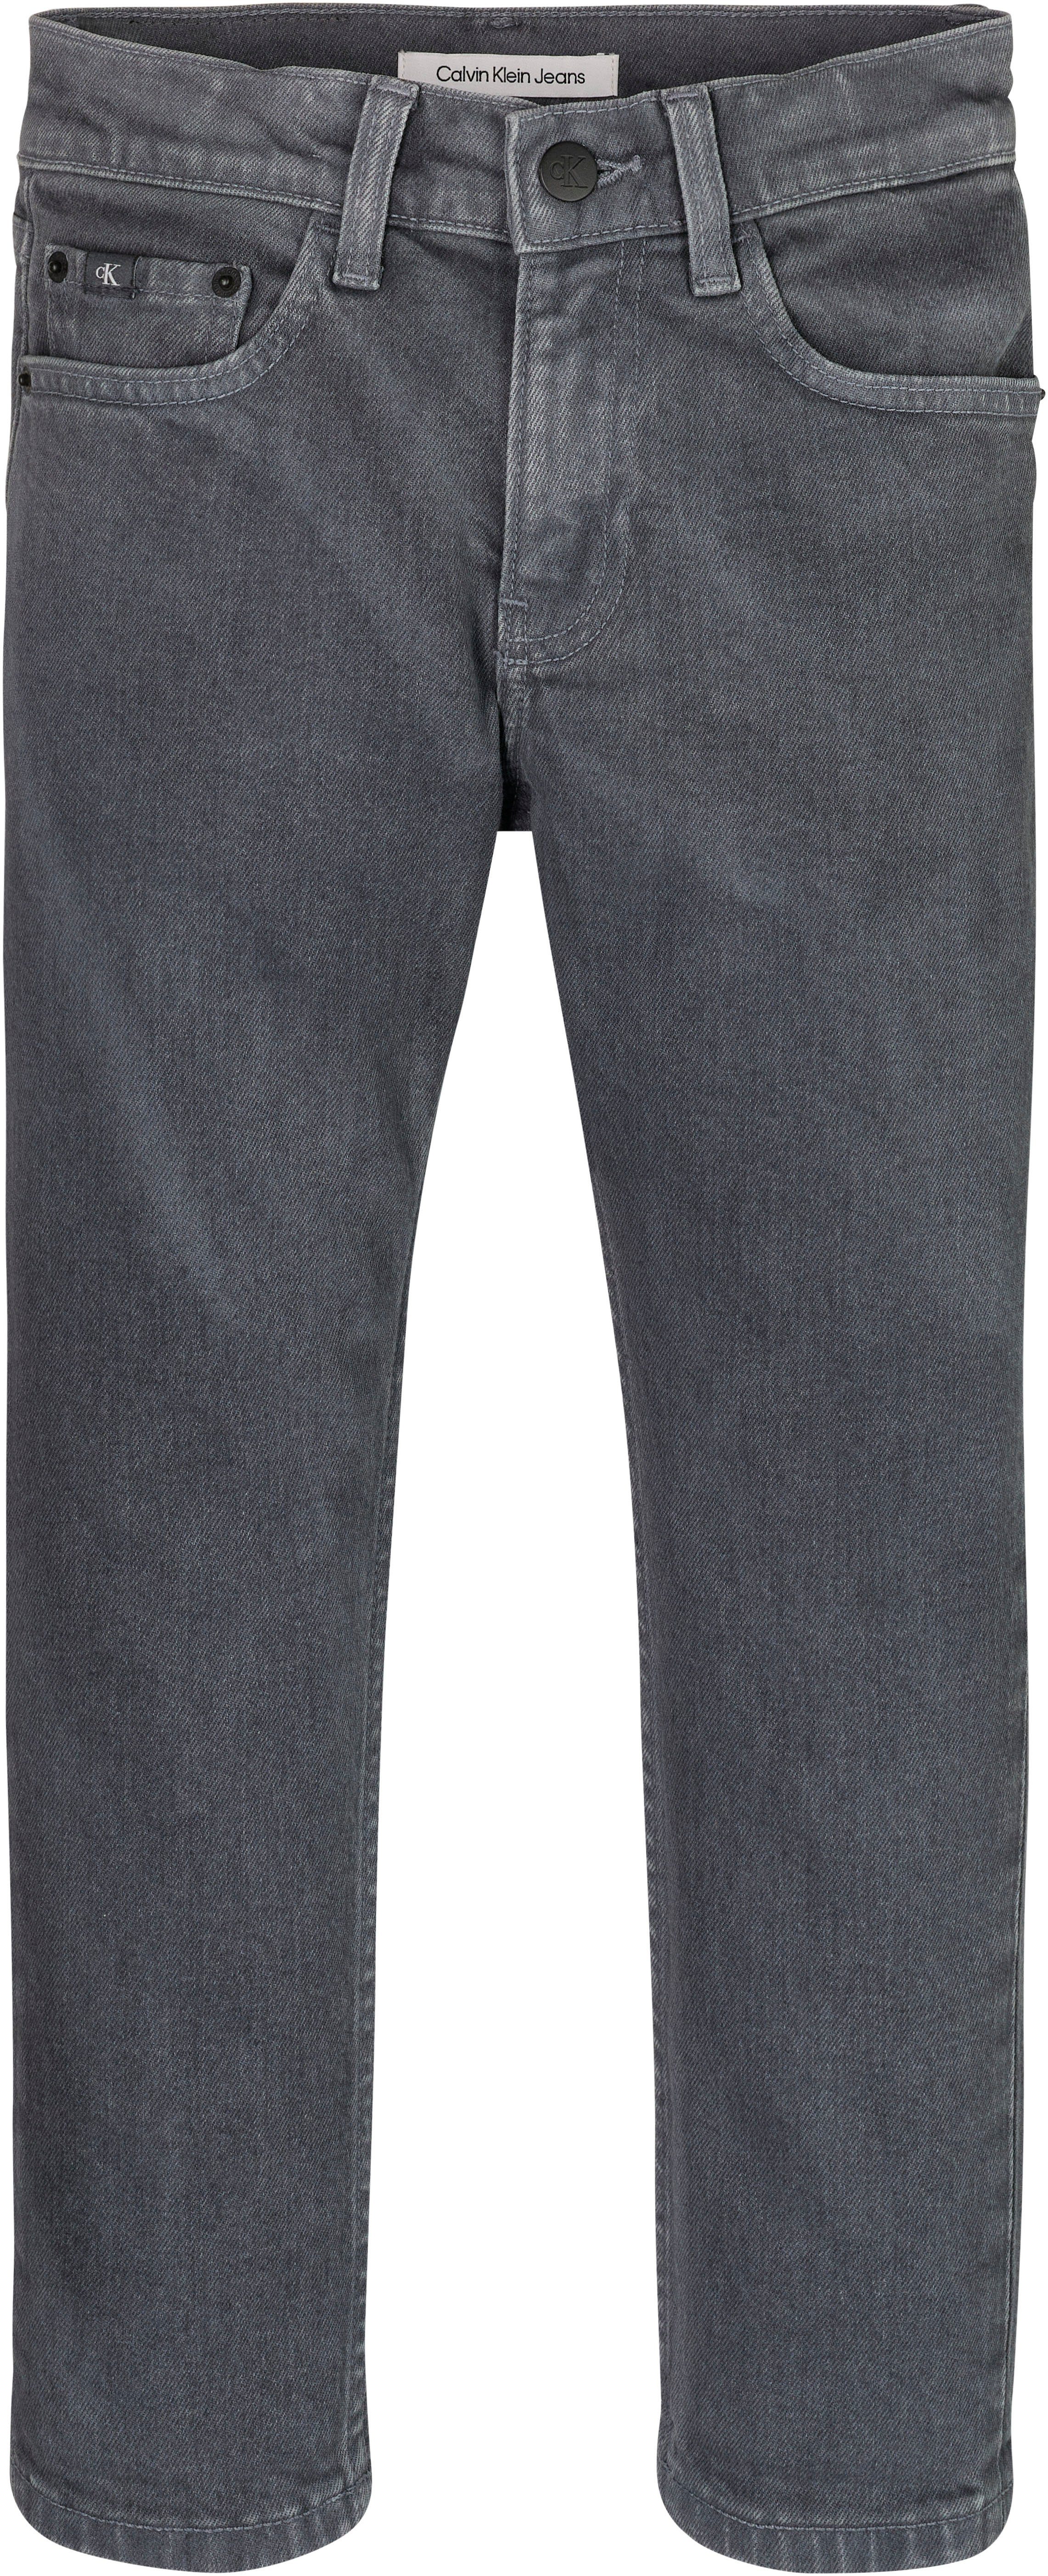 OVERDYED Stretch-Jeans Klein DAD DARK Calvin GREY Jeans